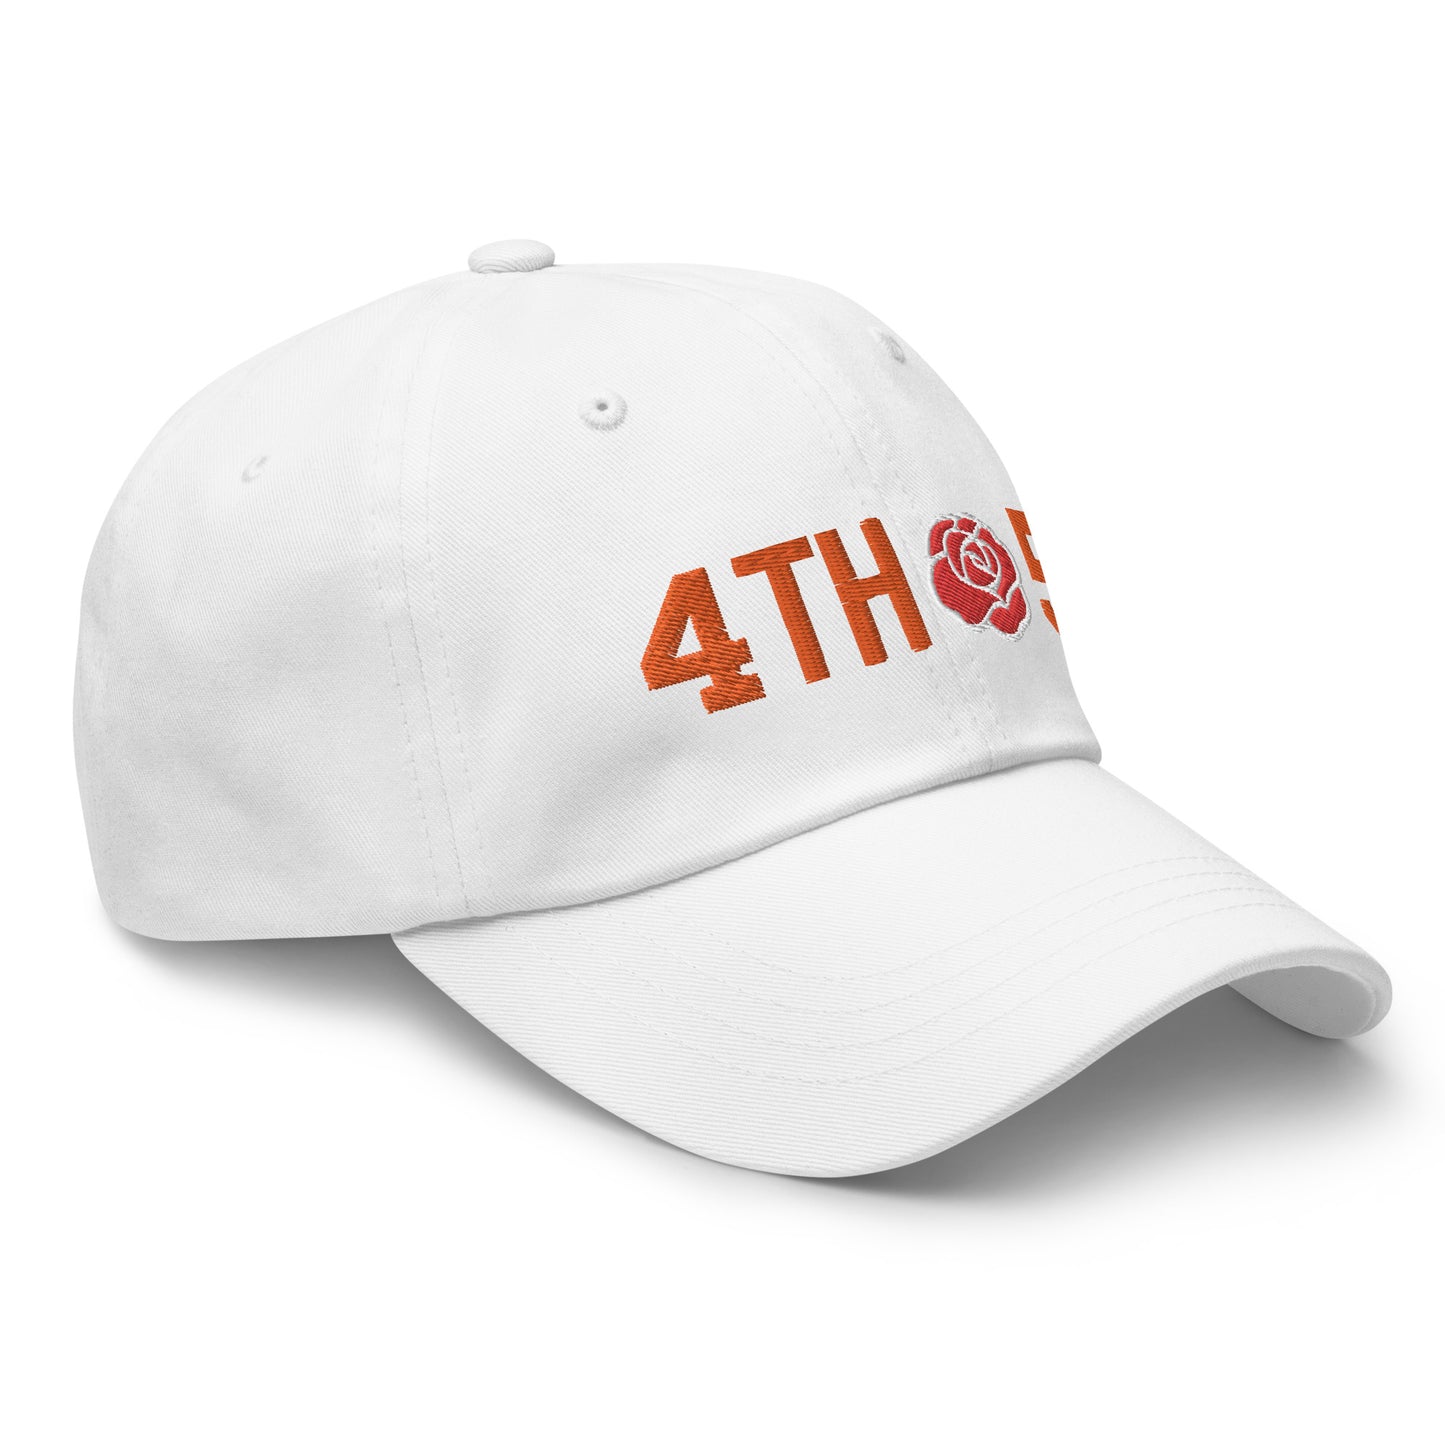 4th&5 - Texas Longhorn - Dad hat